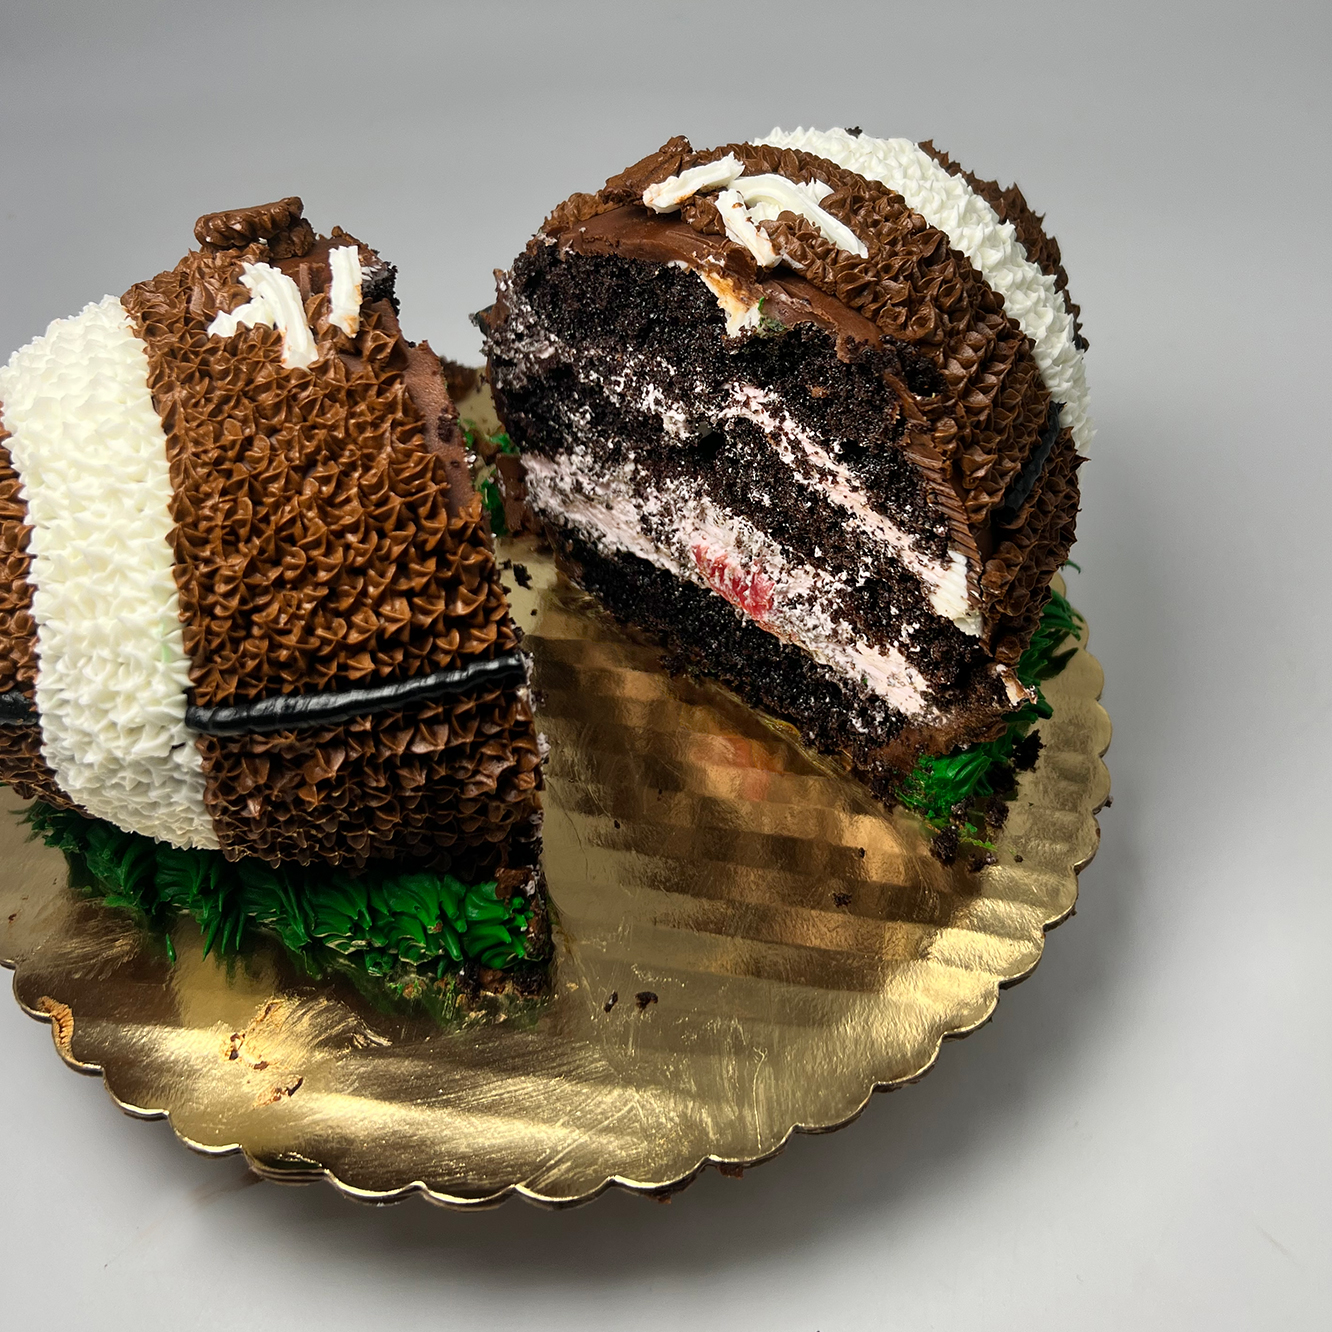 football shaped cake with round cake pan｜TikTok Search